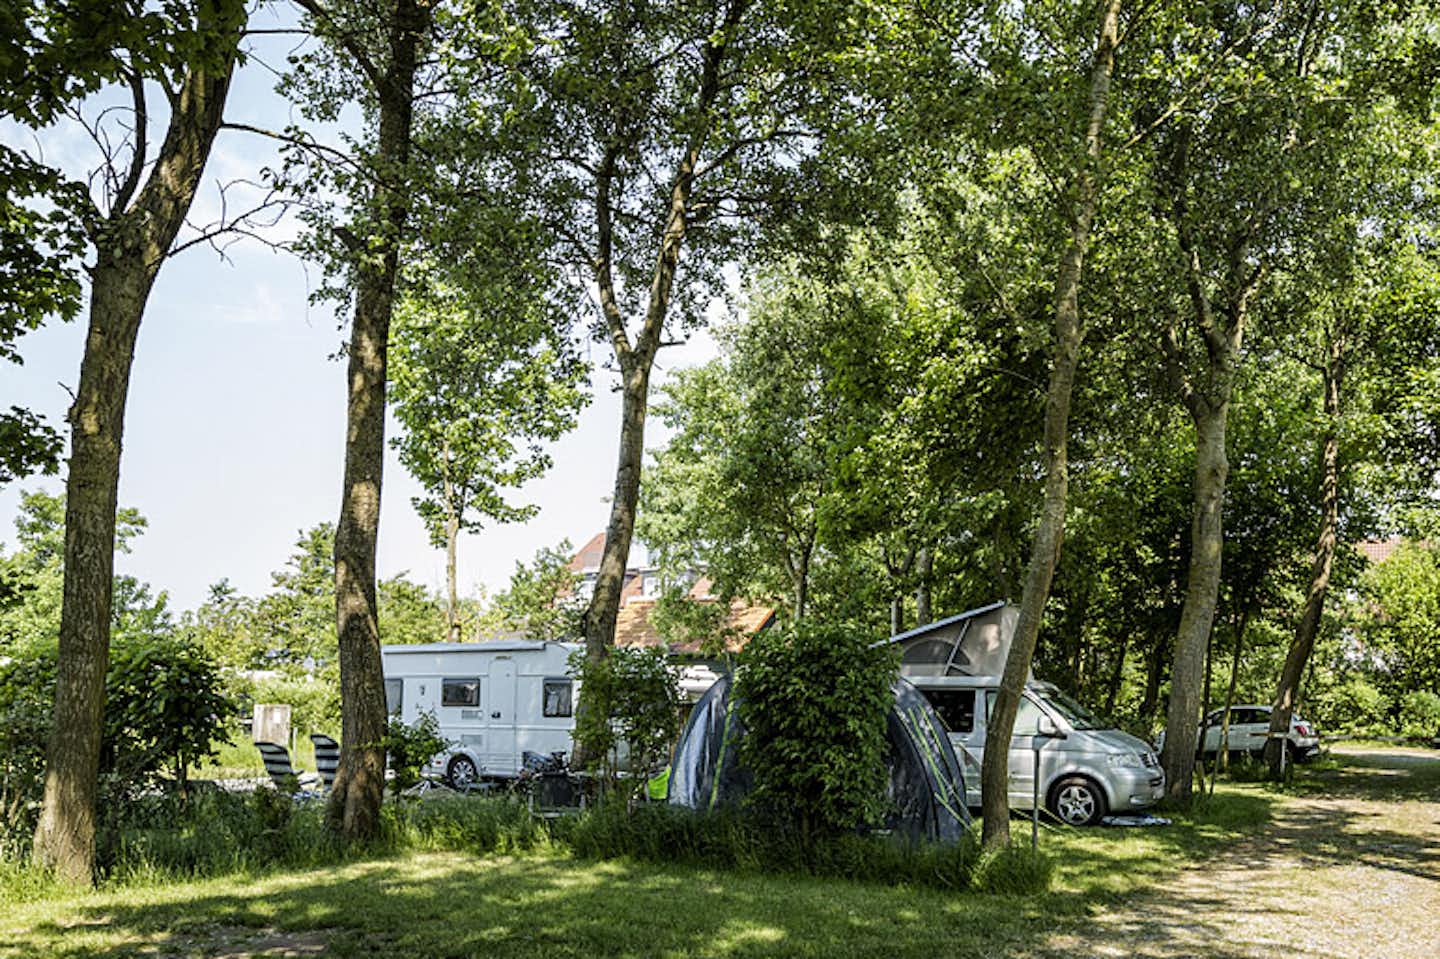 Campingplatz Neuwarft - Wohnmobilstellplätzen unter Bäumen